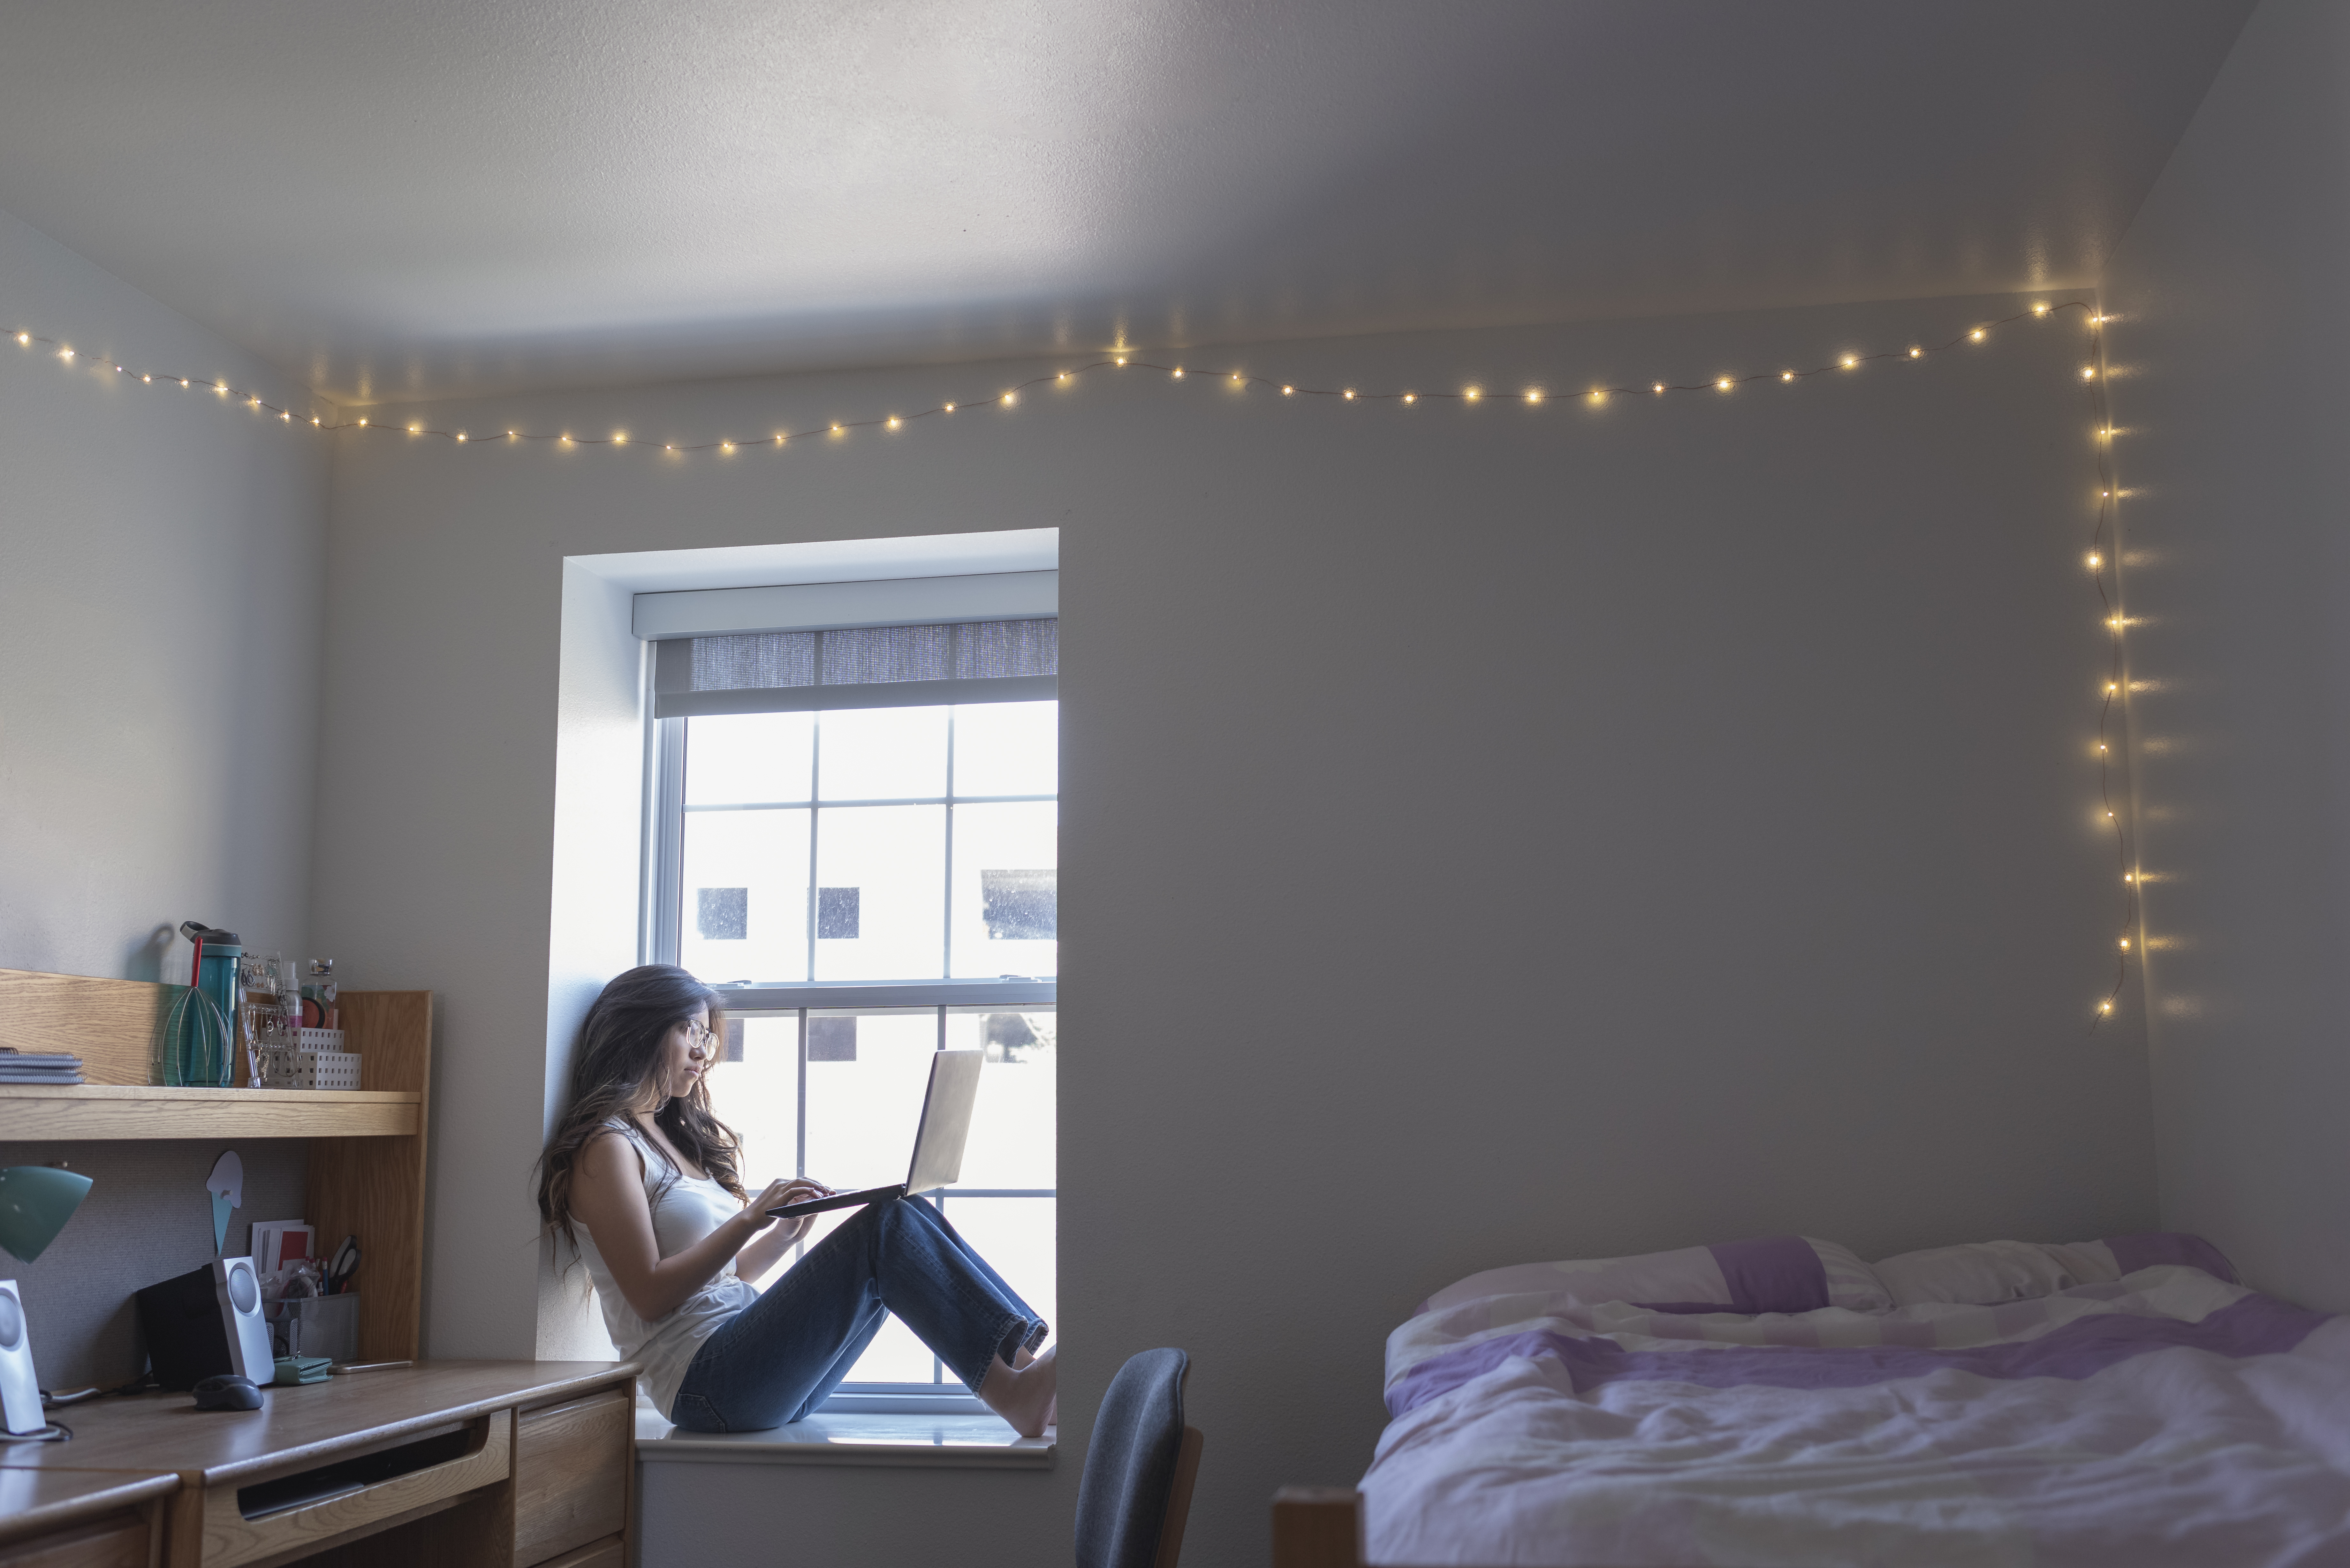 Une étudiante dans sa chambre d'étudiant | Source : Getty Images